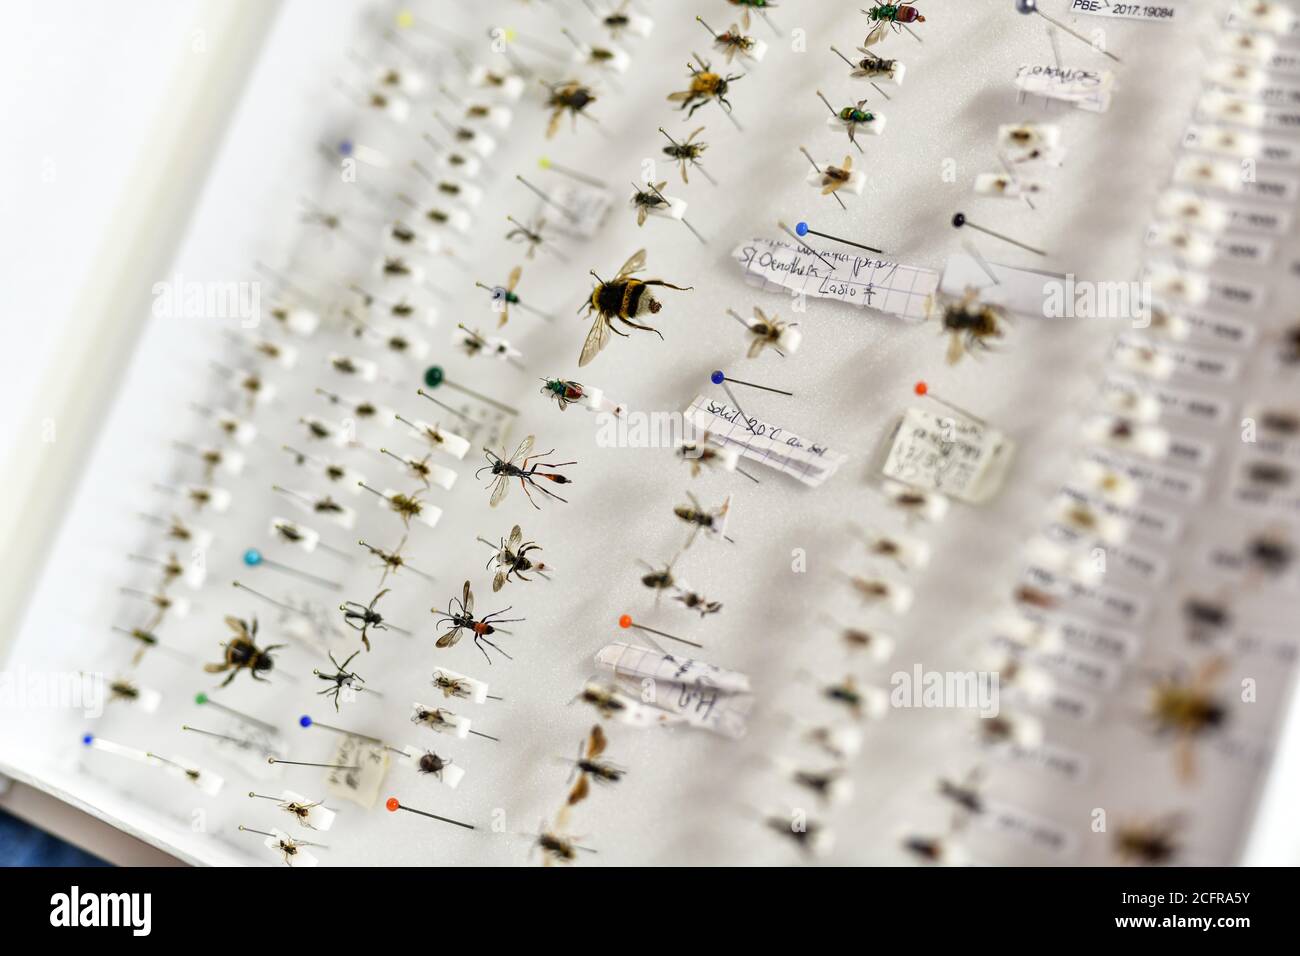 La Tour-de-Salvagny (centro-este de Francia). Colección entomológica perteneciente a “Arthropologia”, una Asociación naturalista para el estudio y contra Foto de stock